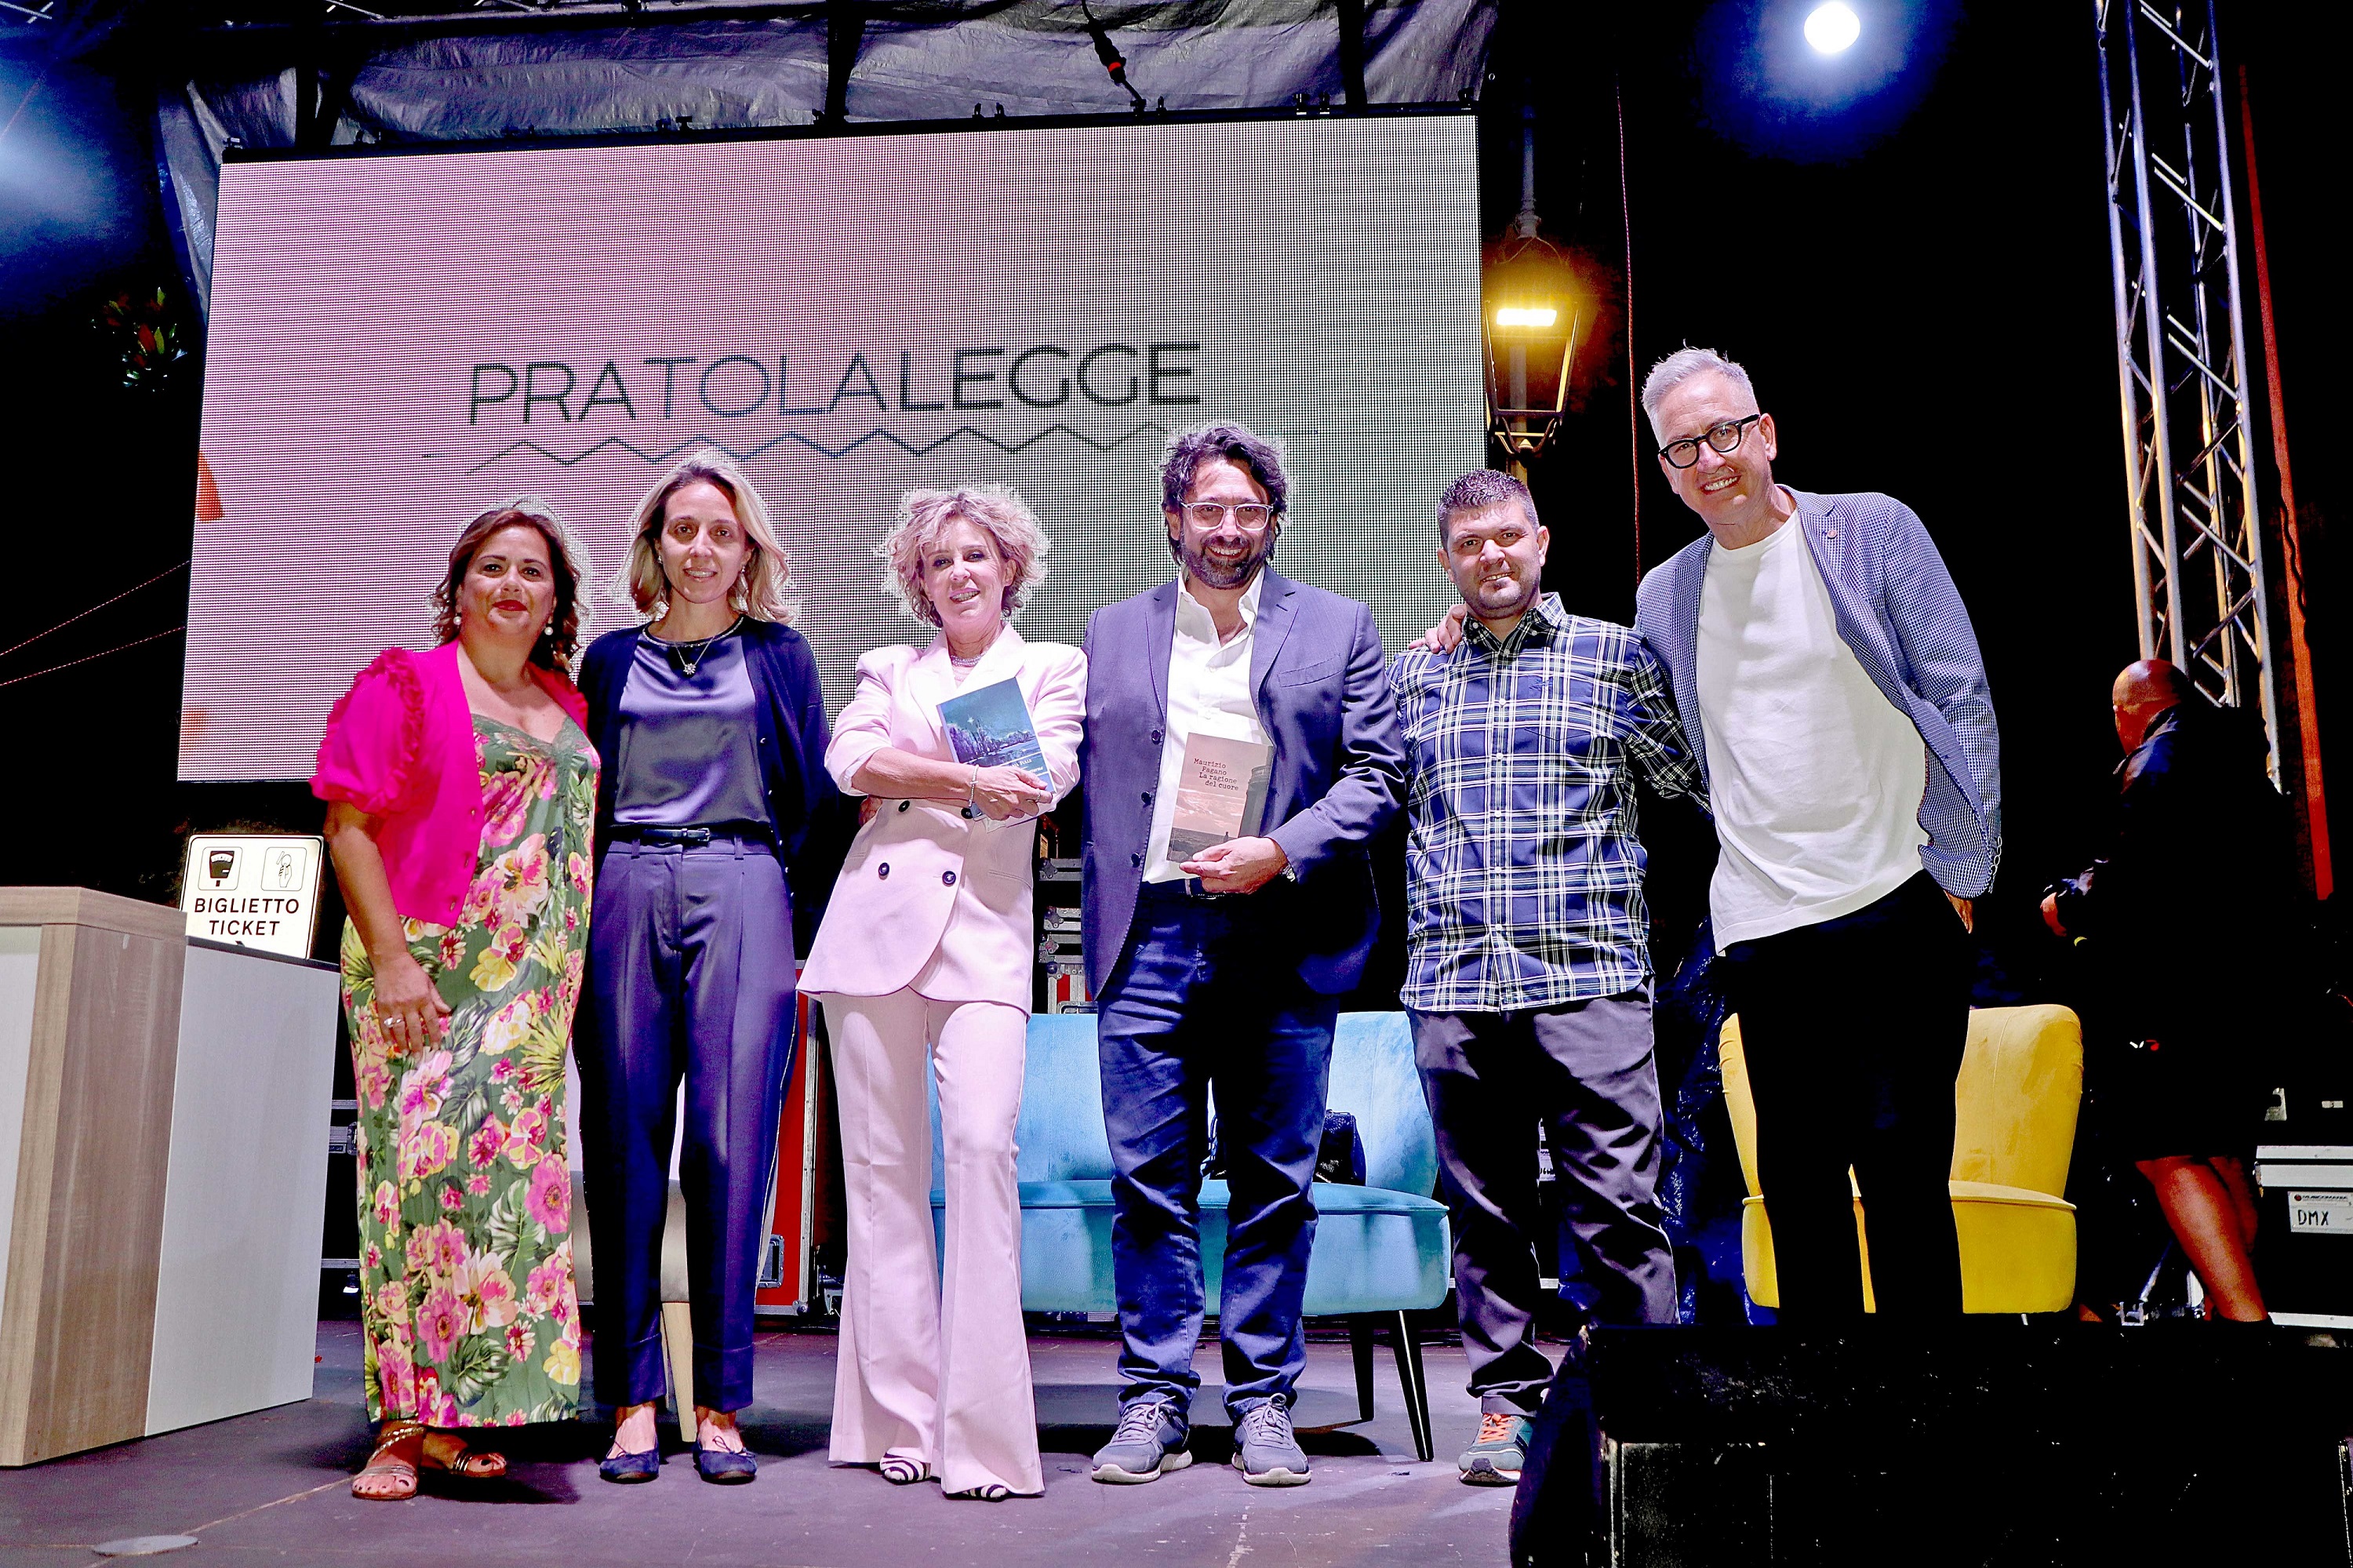 Preatolalegge, successo del Festival letterario di Pratola Peligna